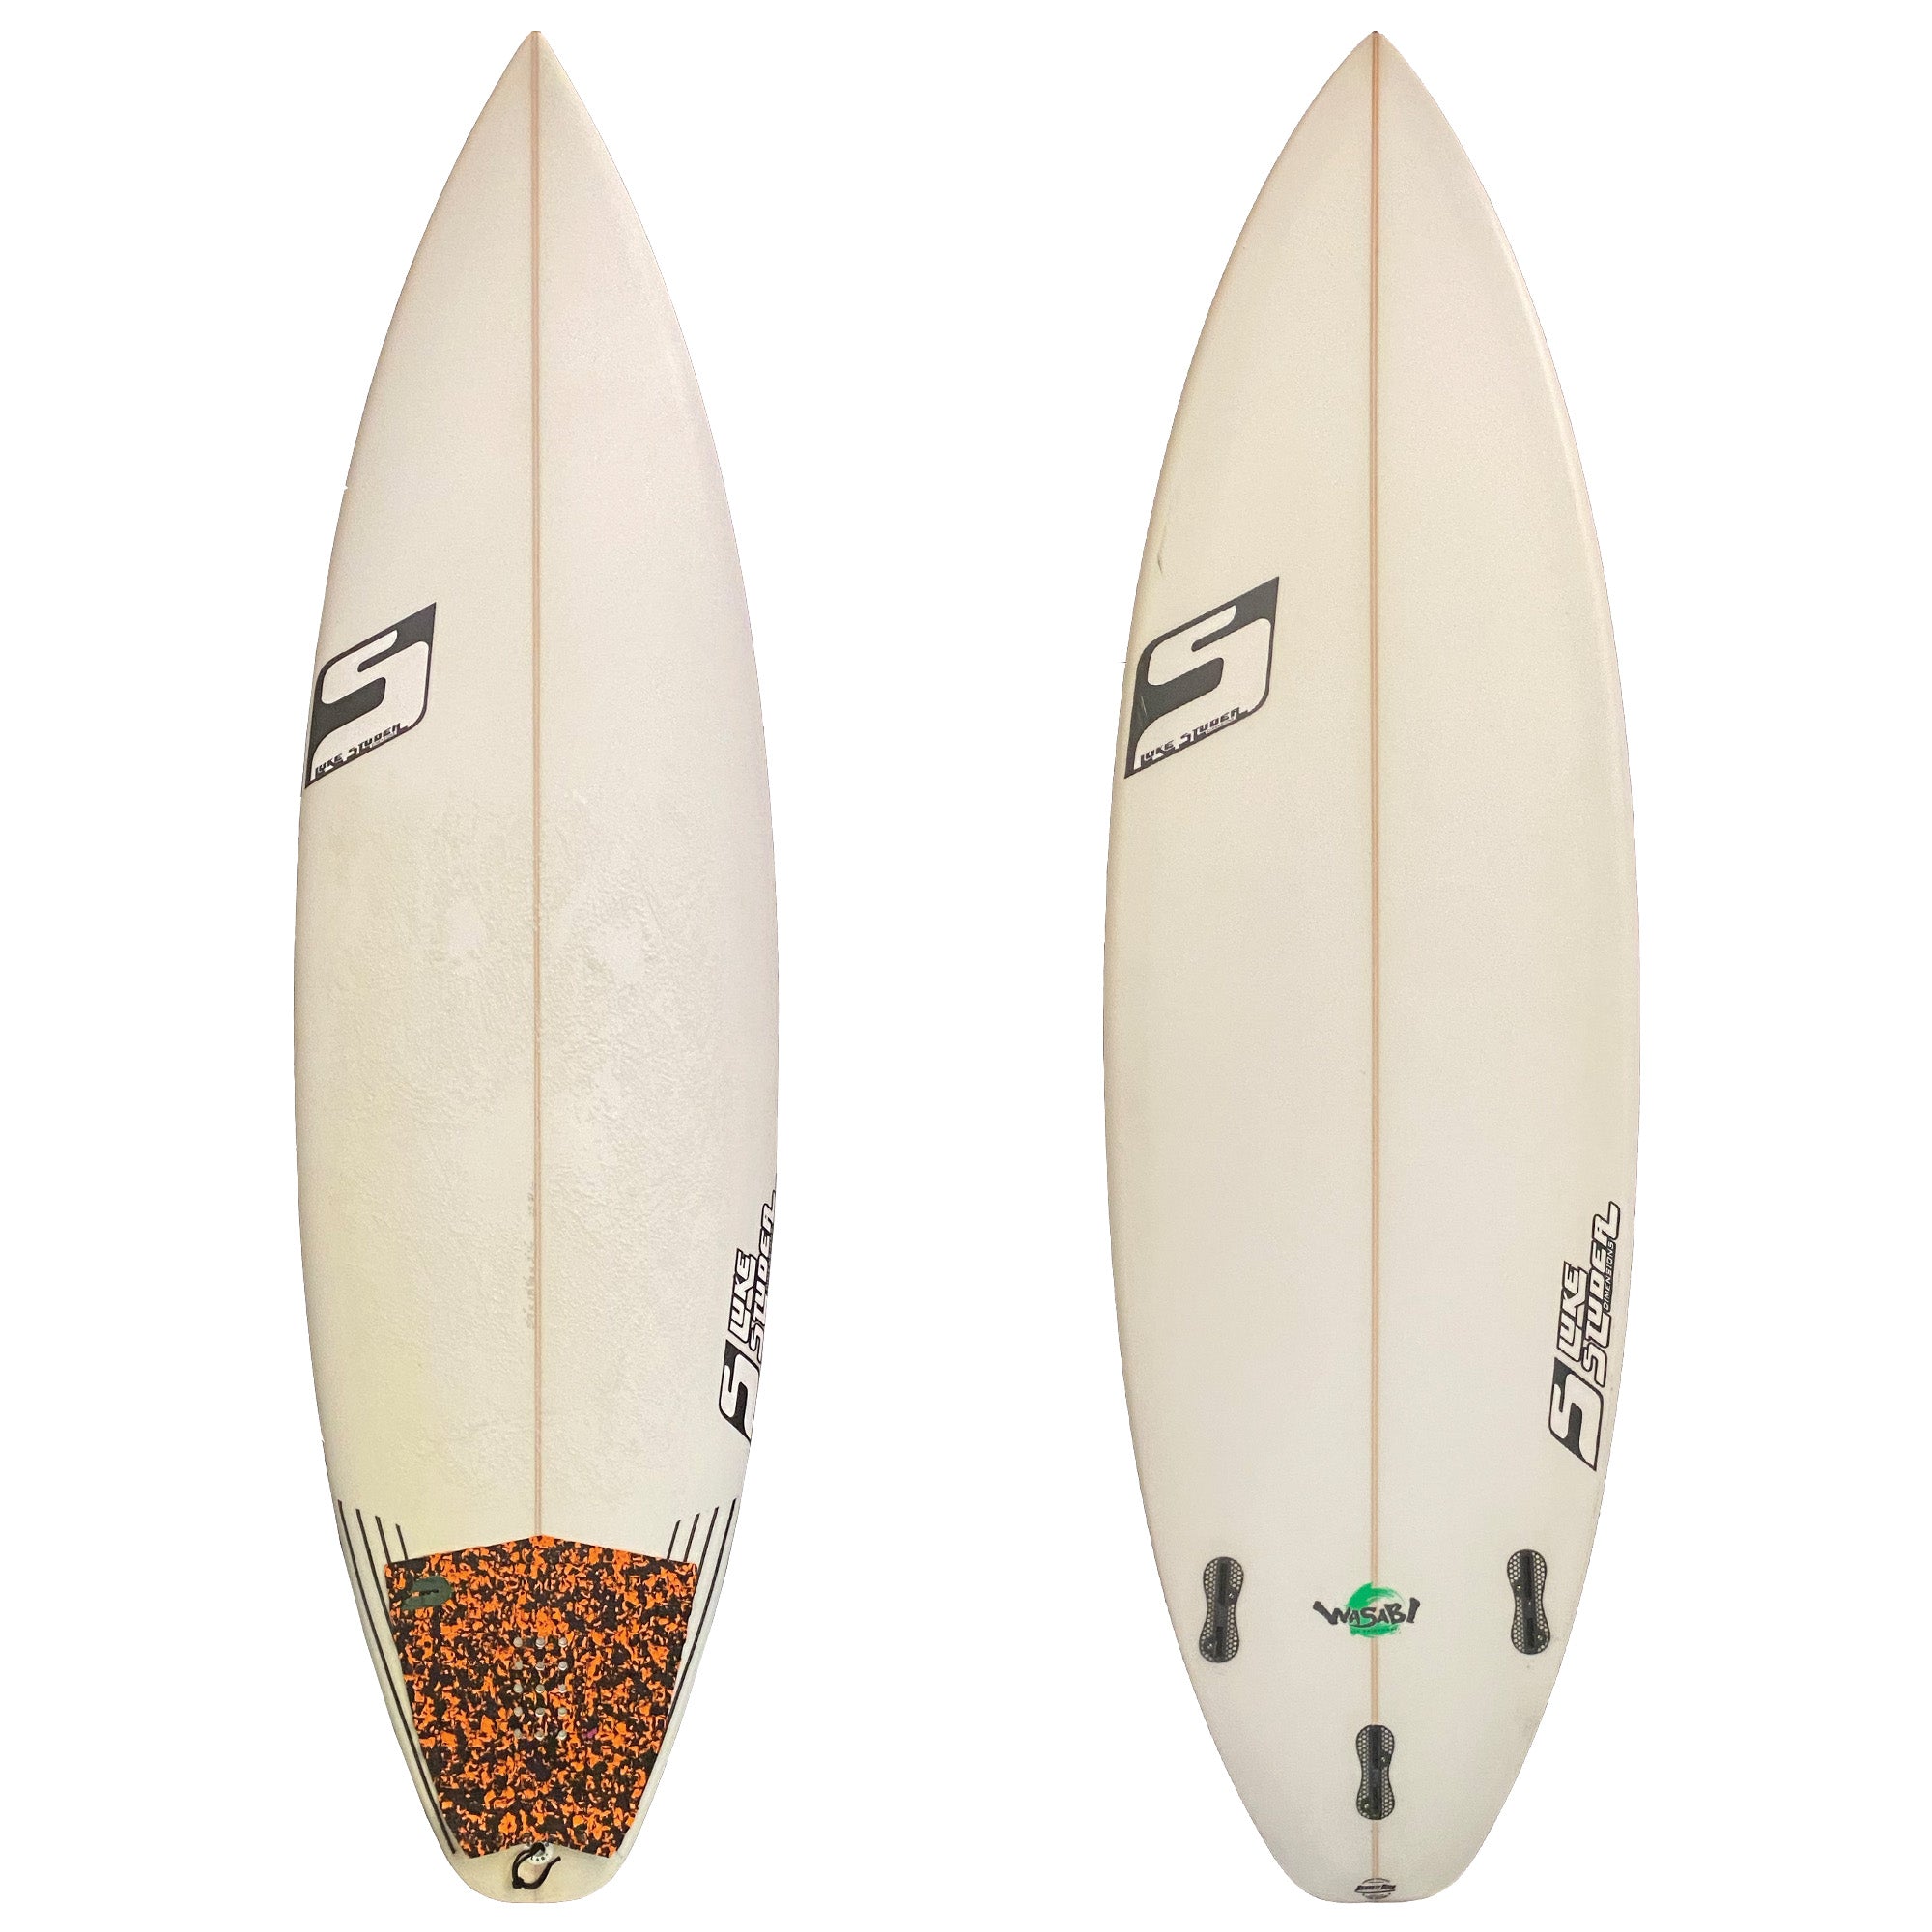 Luke Studer 5'9 Used Surfboard